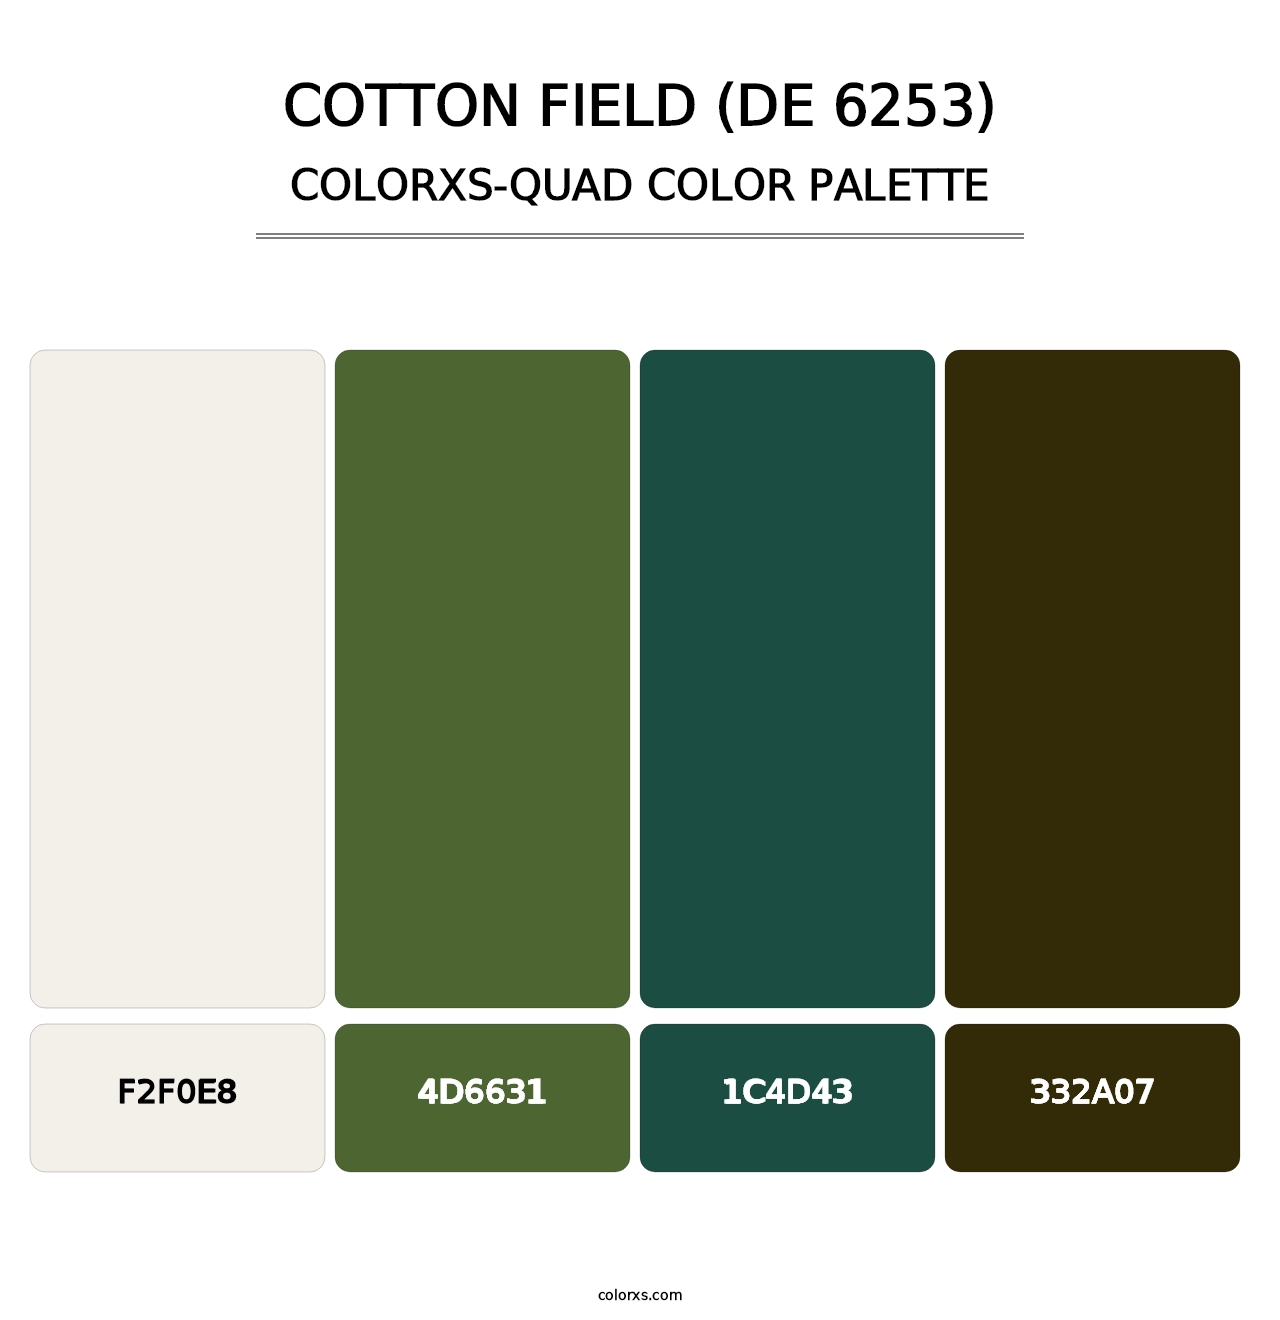 Cotton Field (DE 6253) - Colorxs Quad Palette